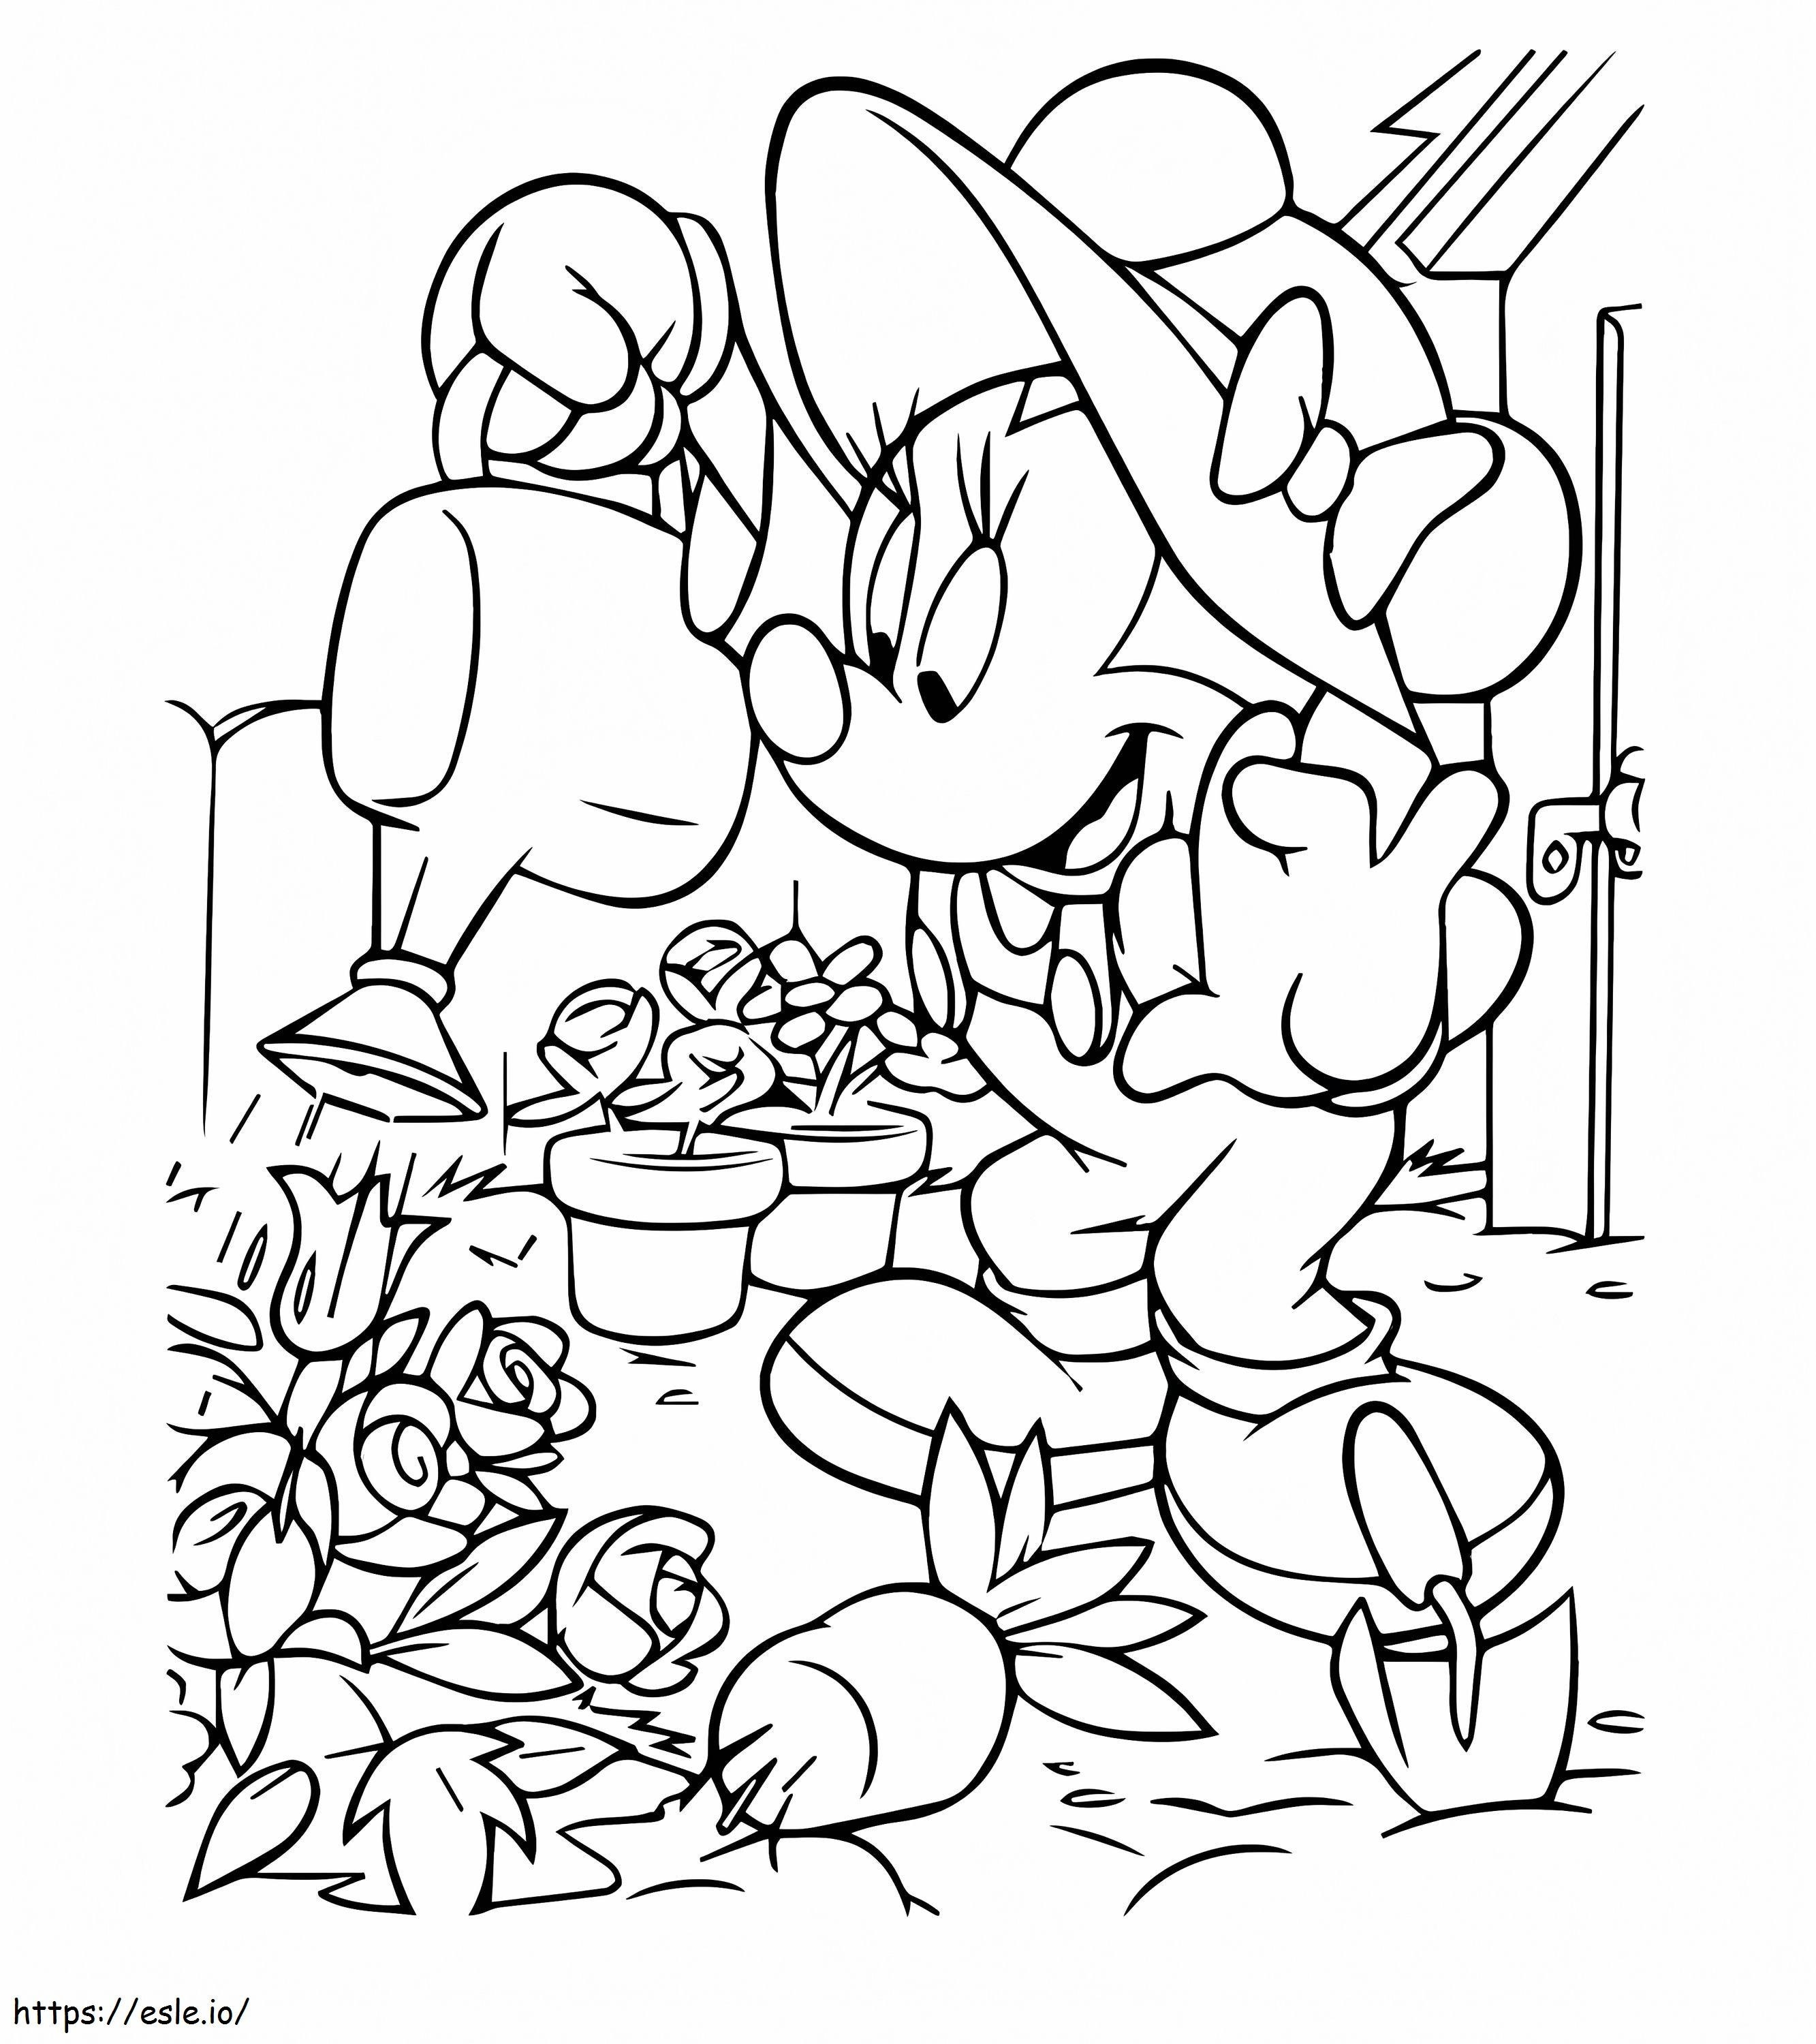 Minnie Mouse regando las plantas para colorear